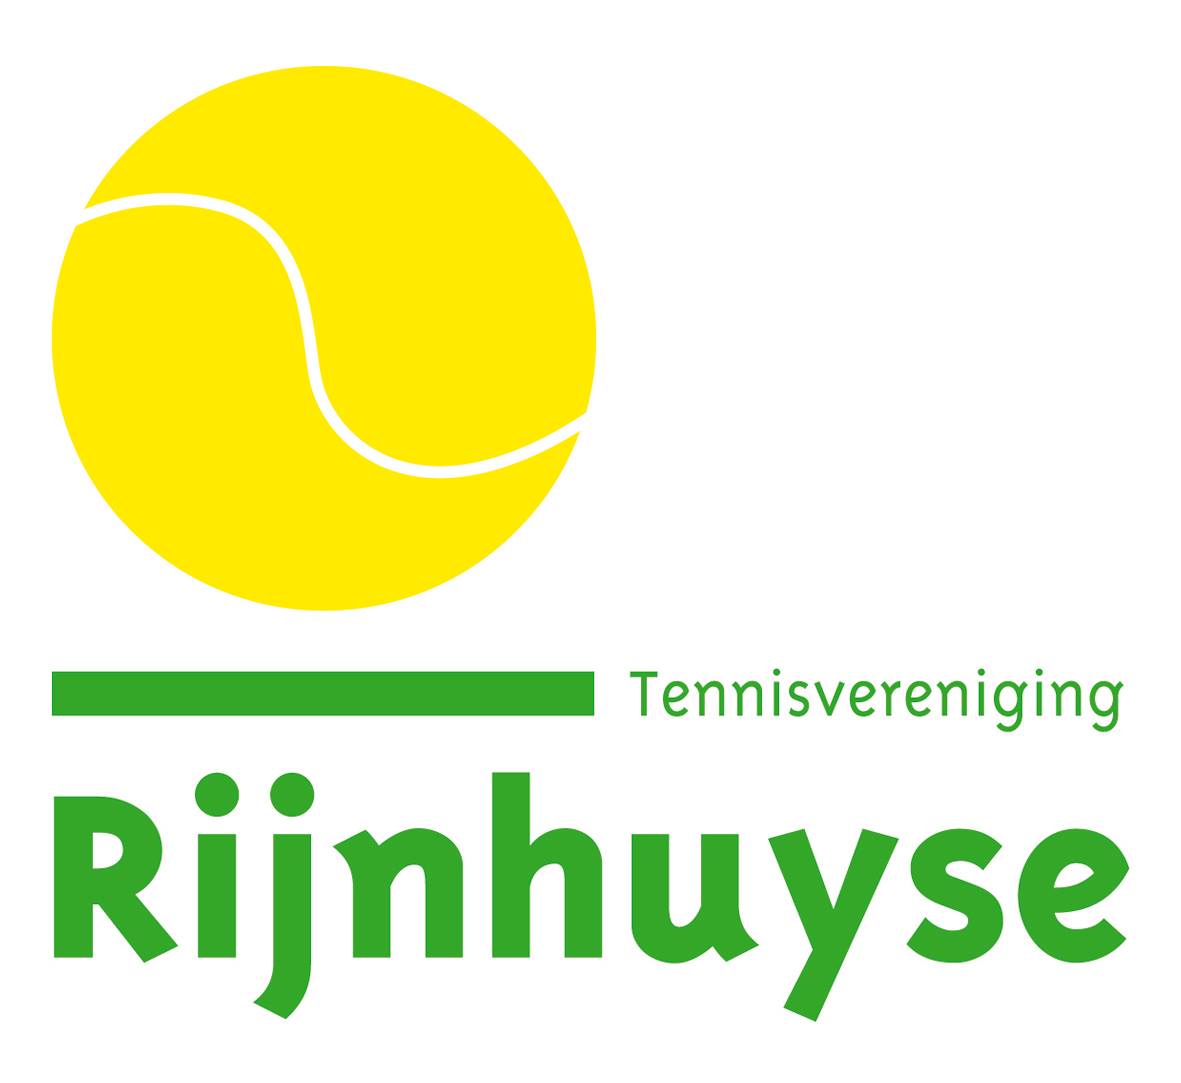 Profile image of venue Tennisvereniging Rijnhuyse